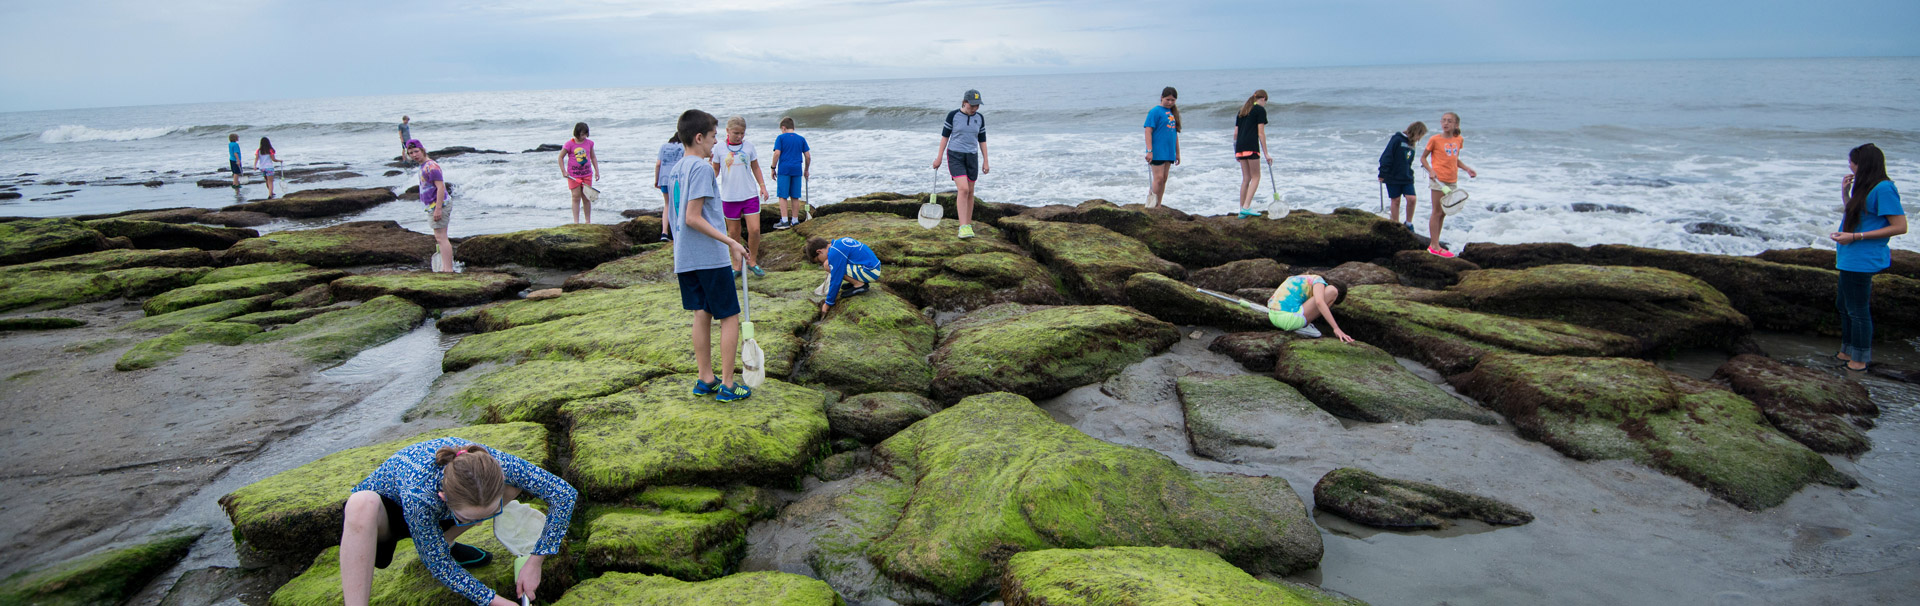 Class inspecting the Coquina rocks at Kure Beach